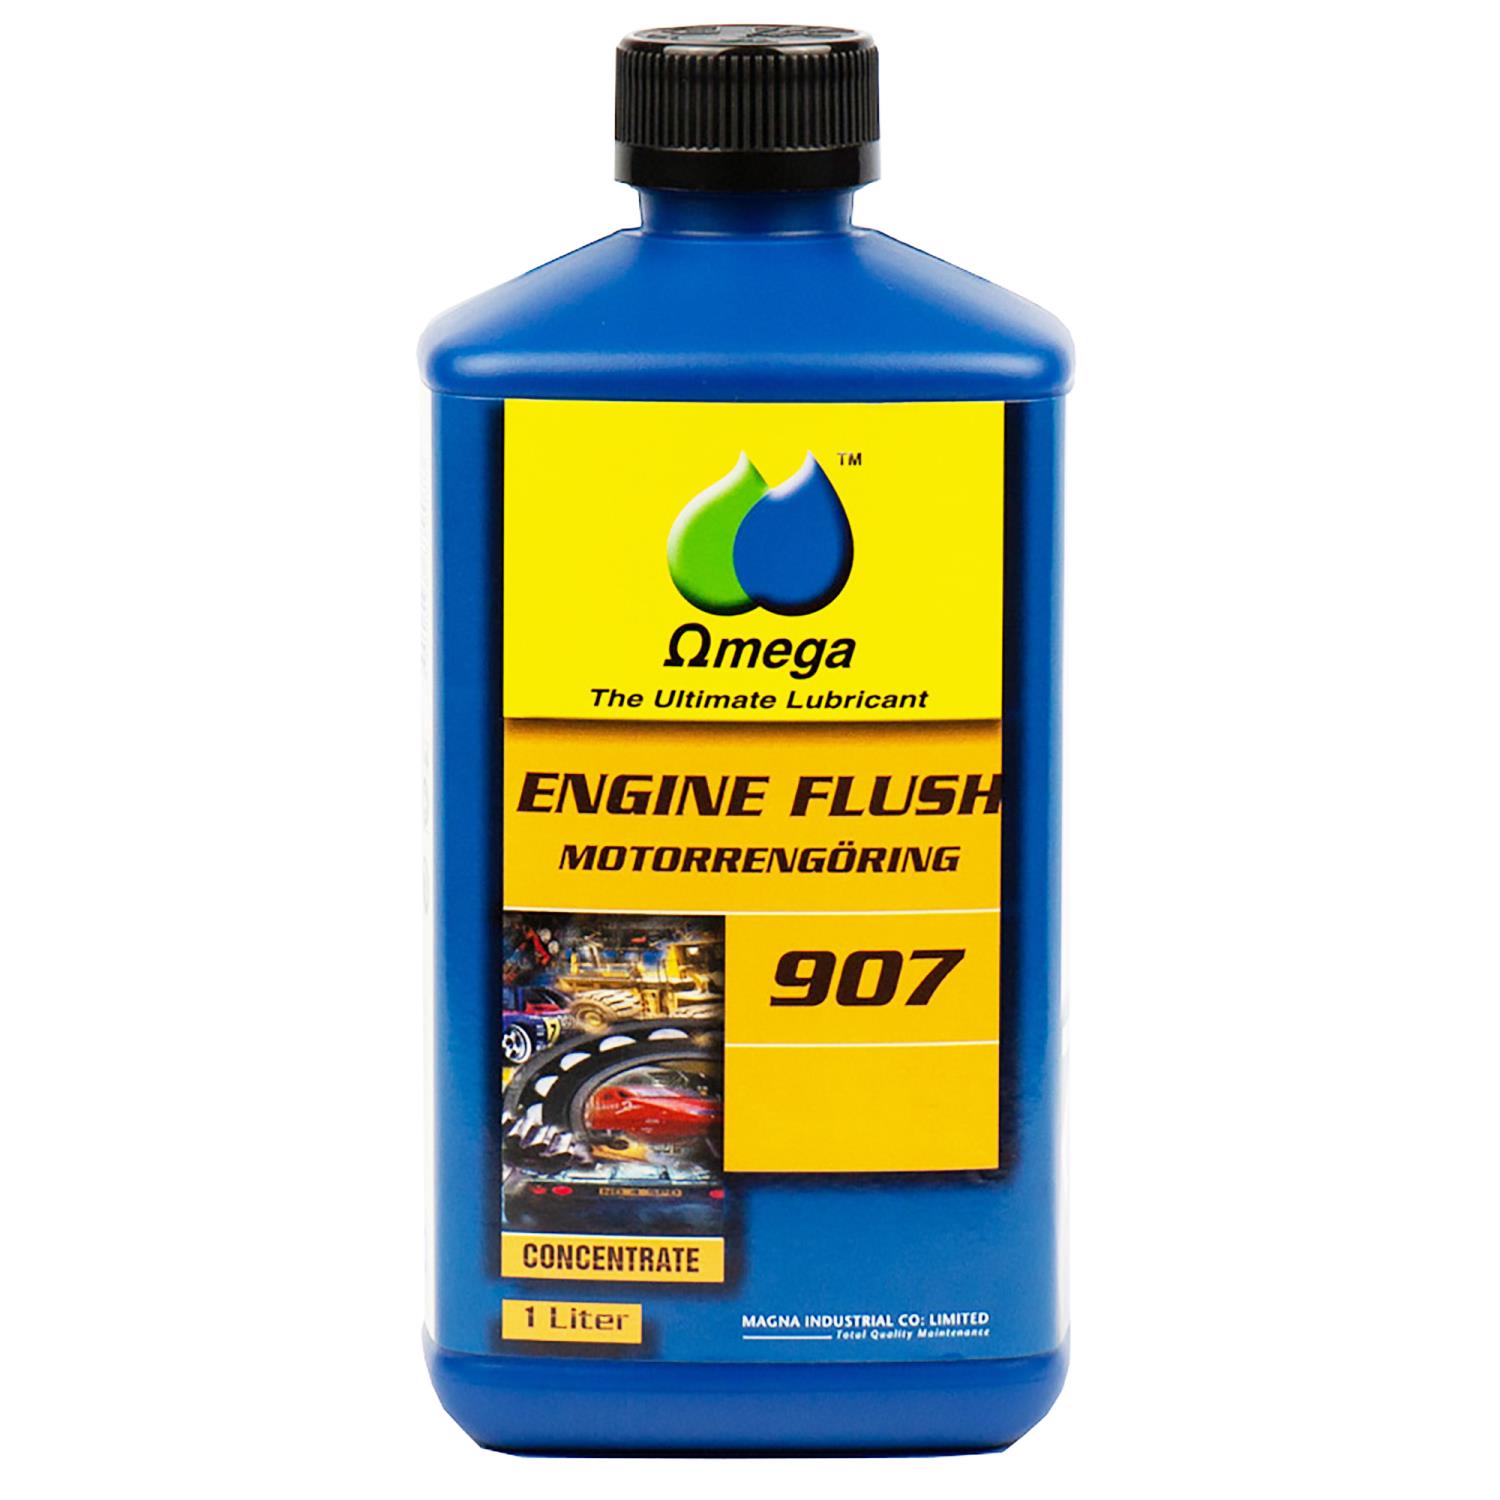 Omega 907 Motorrens - Engine Flush - Engine Cleaner 1 L iter